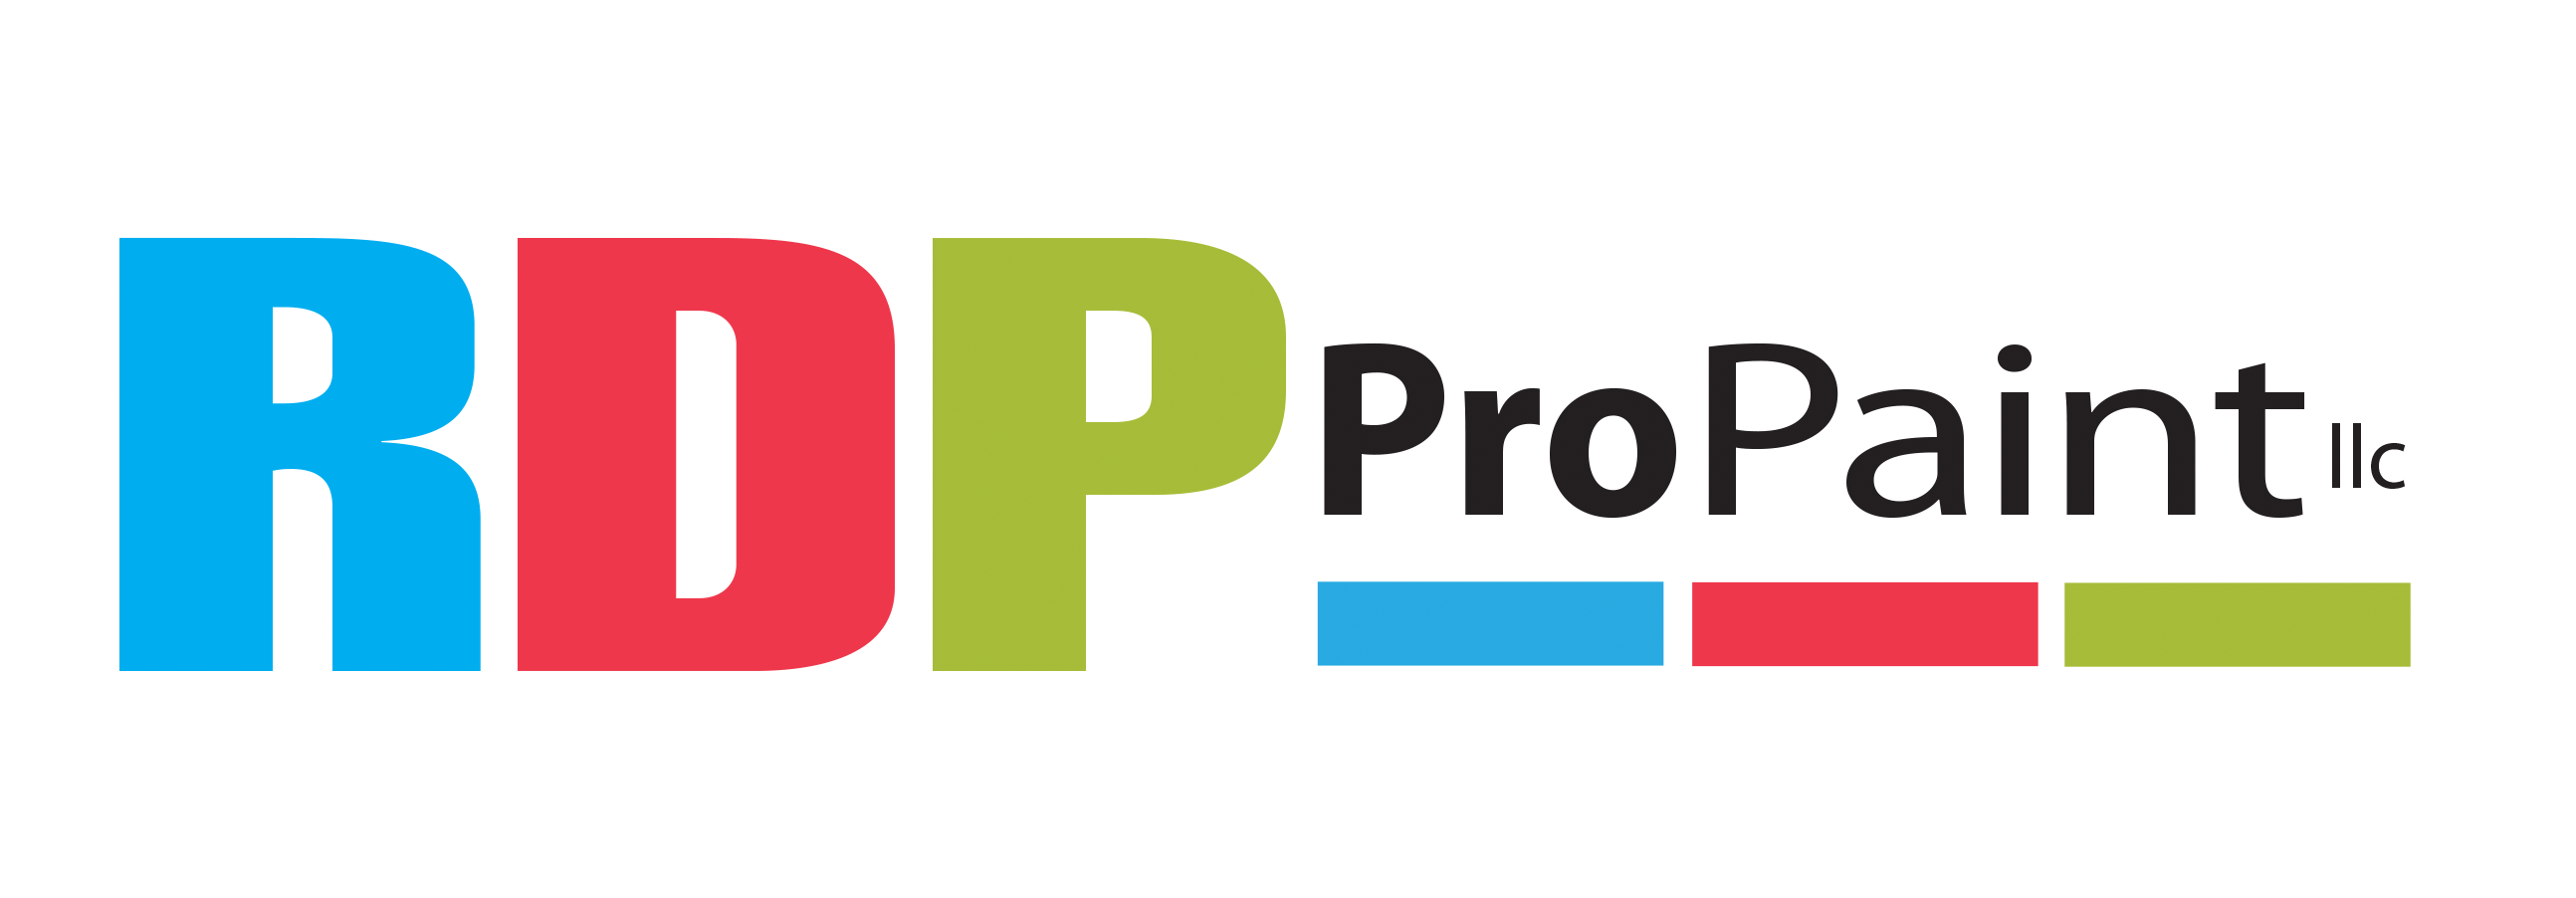 RDP Logo - rdp pro paint logo – RDP Pro Paint